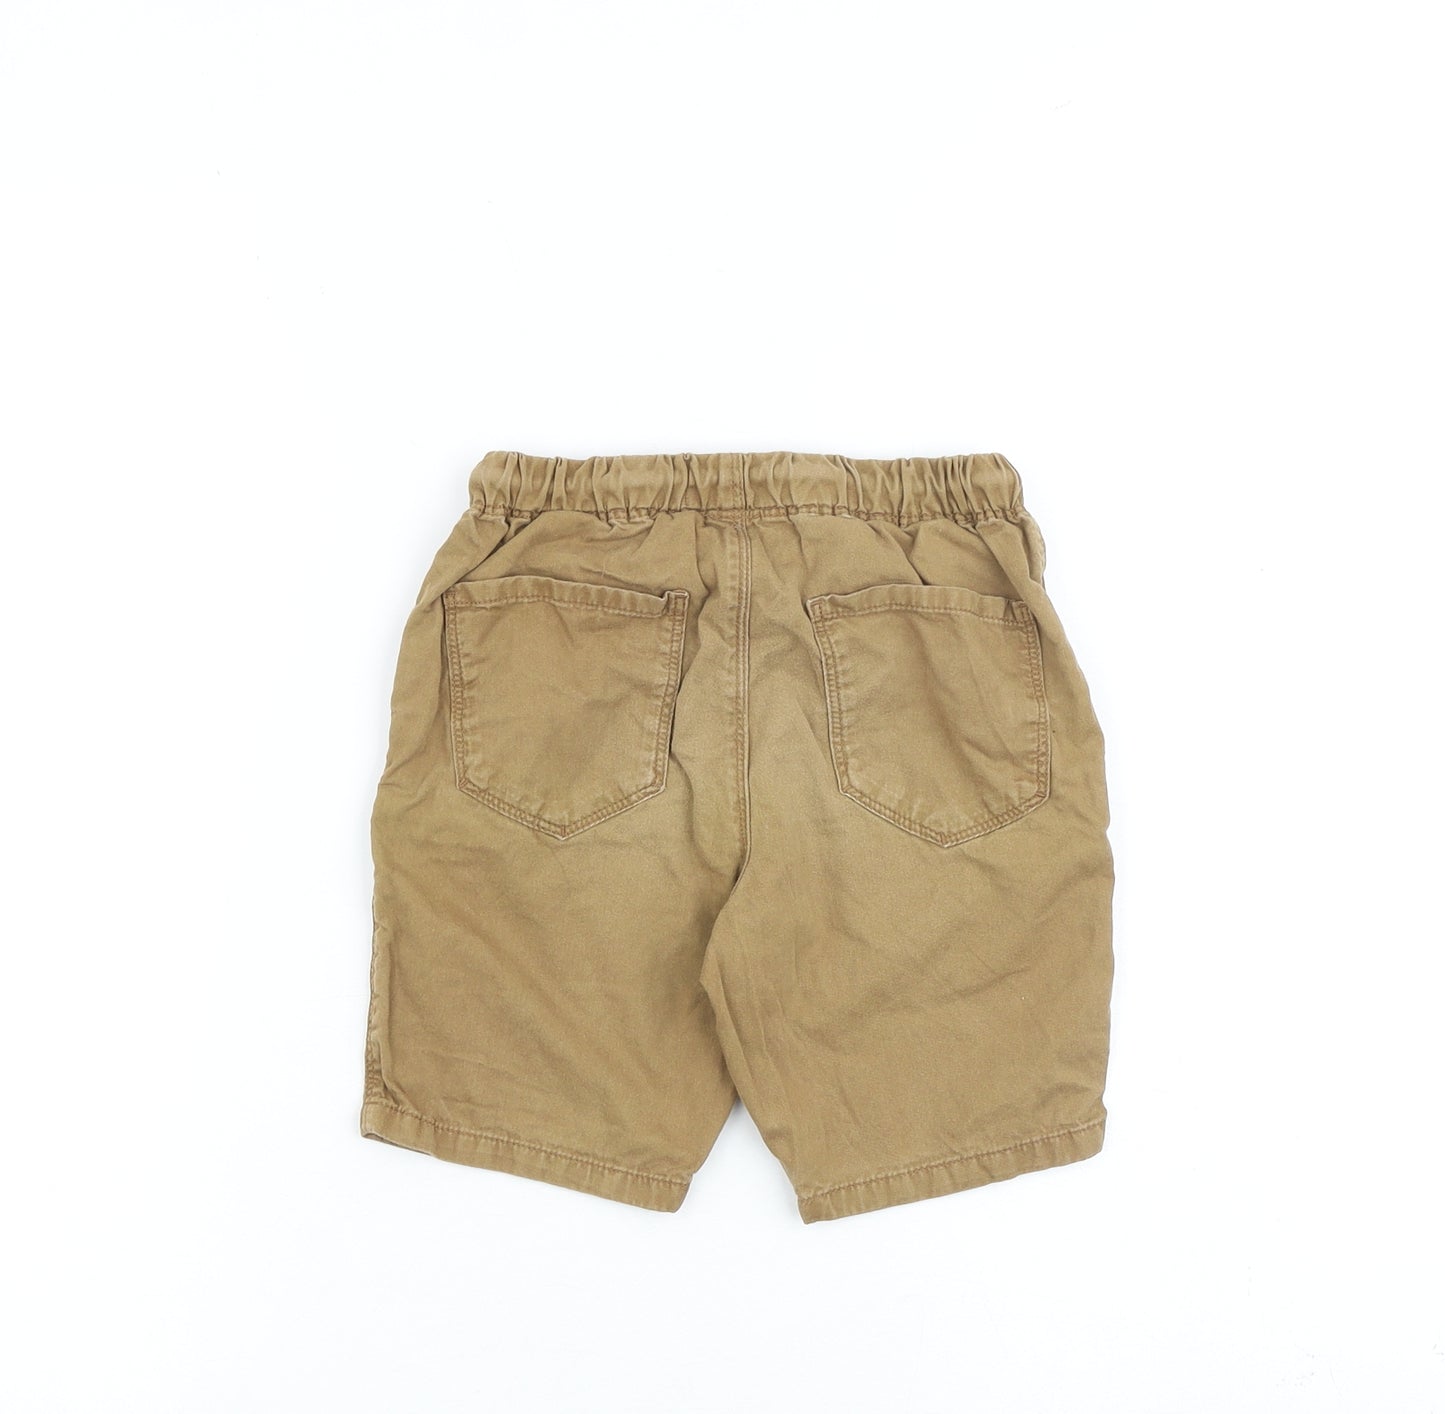 NEXT Boys Brown Cotton Bermuda Shorts Size 5-6 Years Regular Drawstring